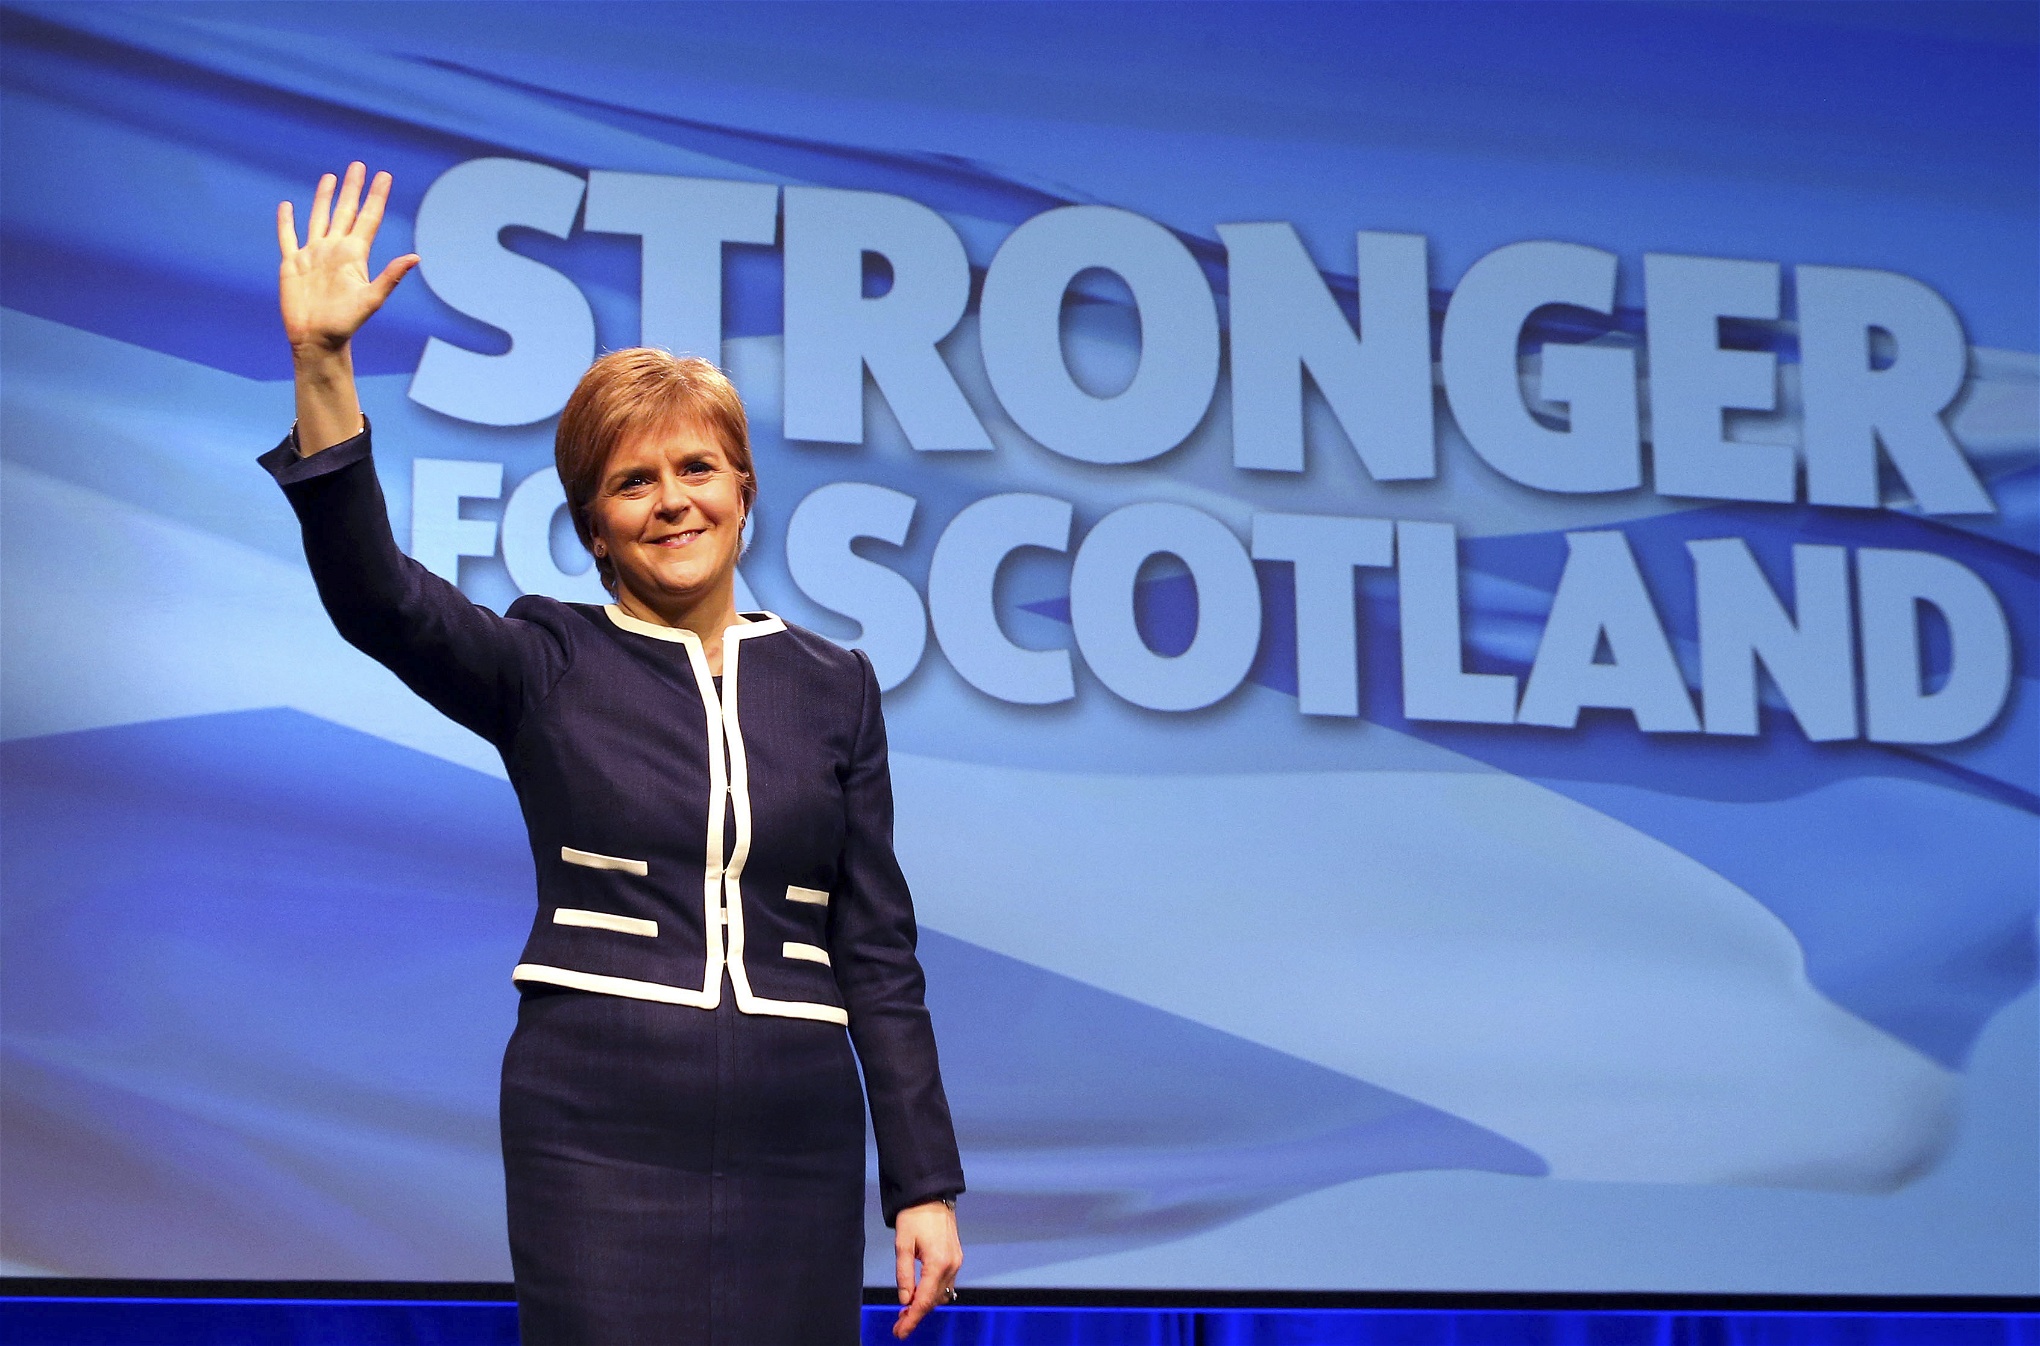 SNP:s ledare Nicola Sturgeon får tvärnej av Theresa May angående en folkomröstning om Skottlands självständighet.